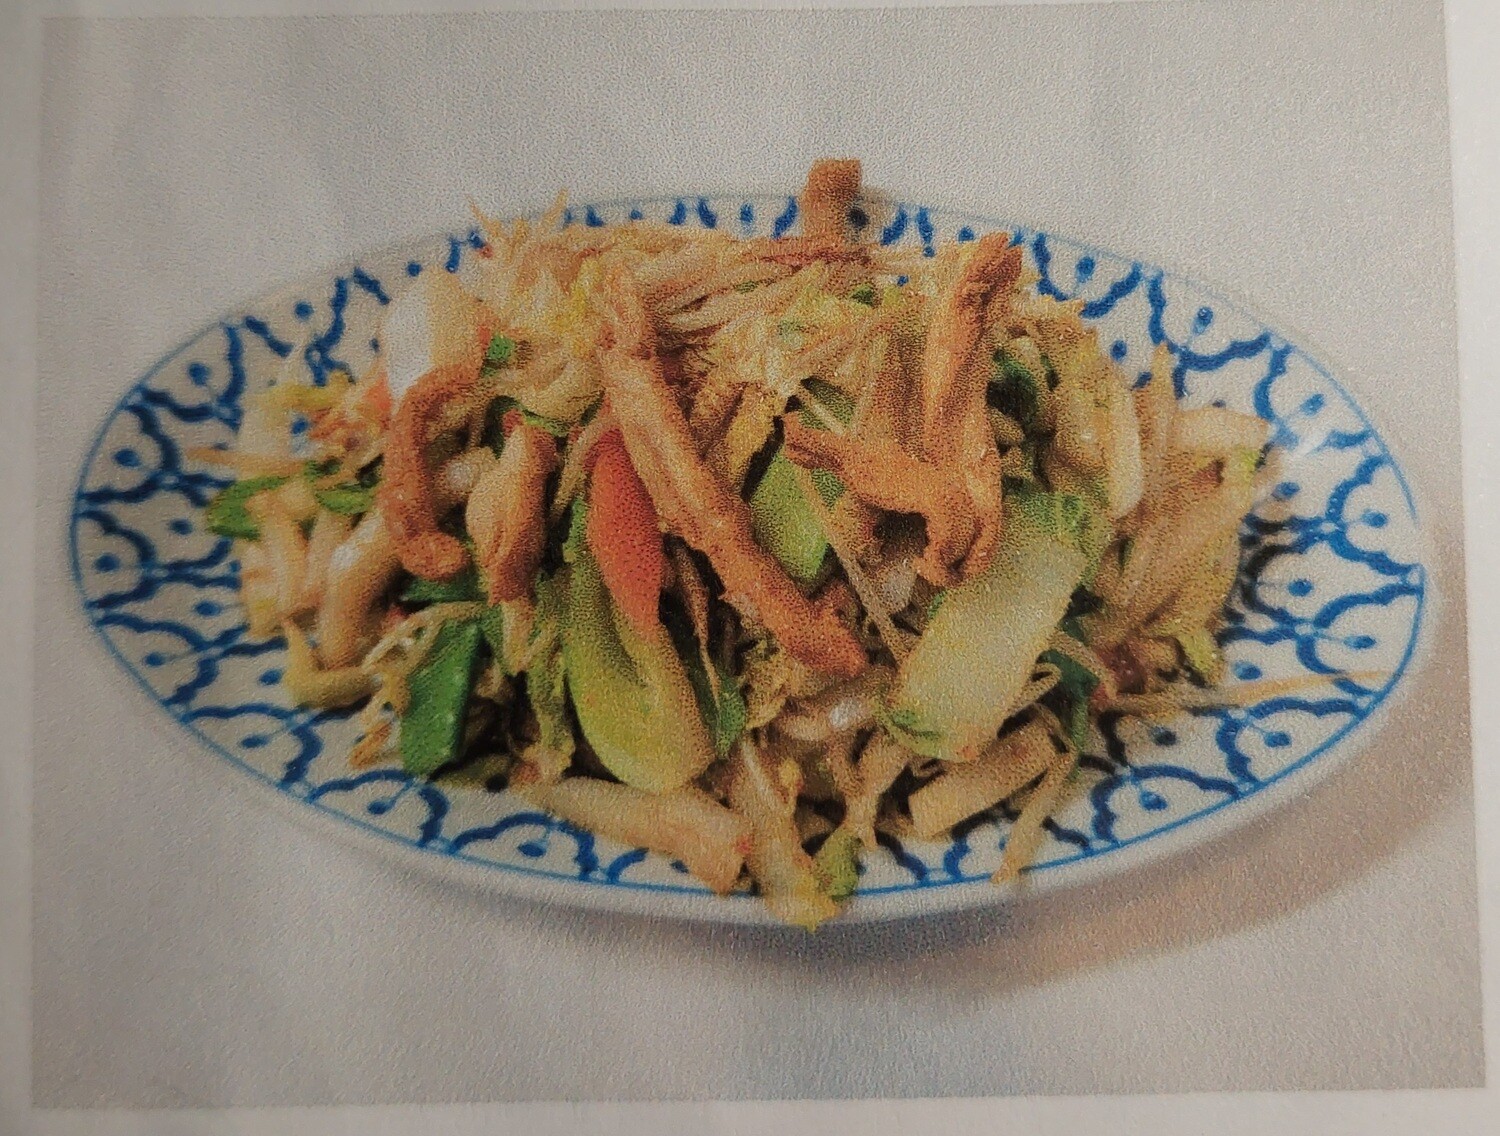 41. Poulet sauté aux légumes/ Fried chicken with végétables